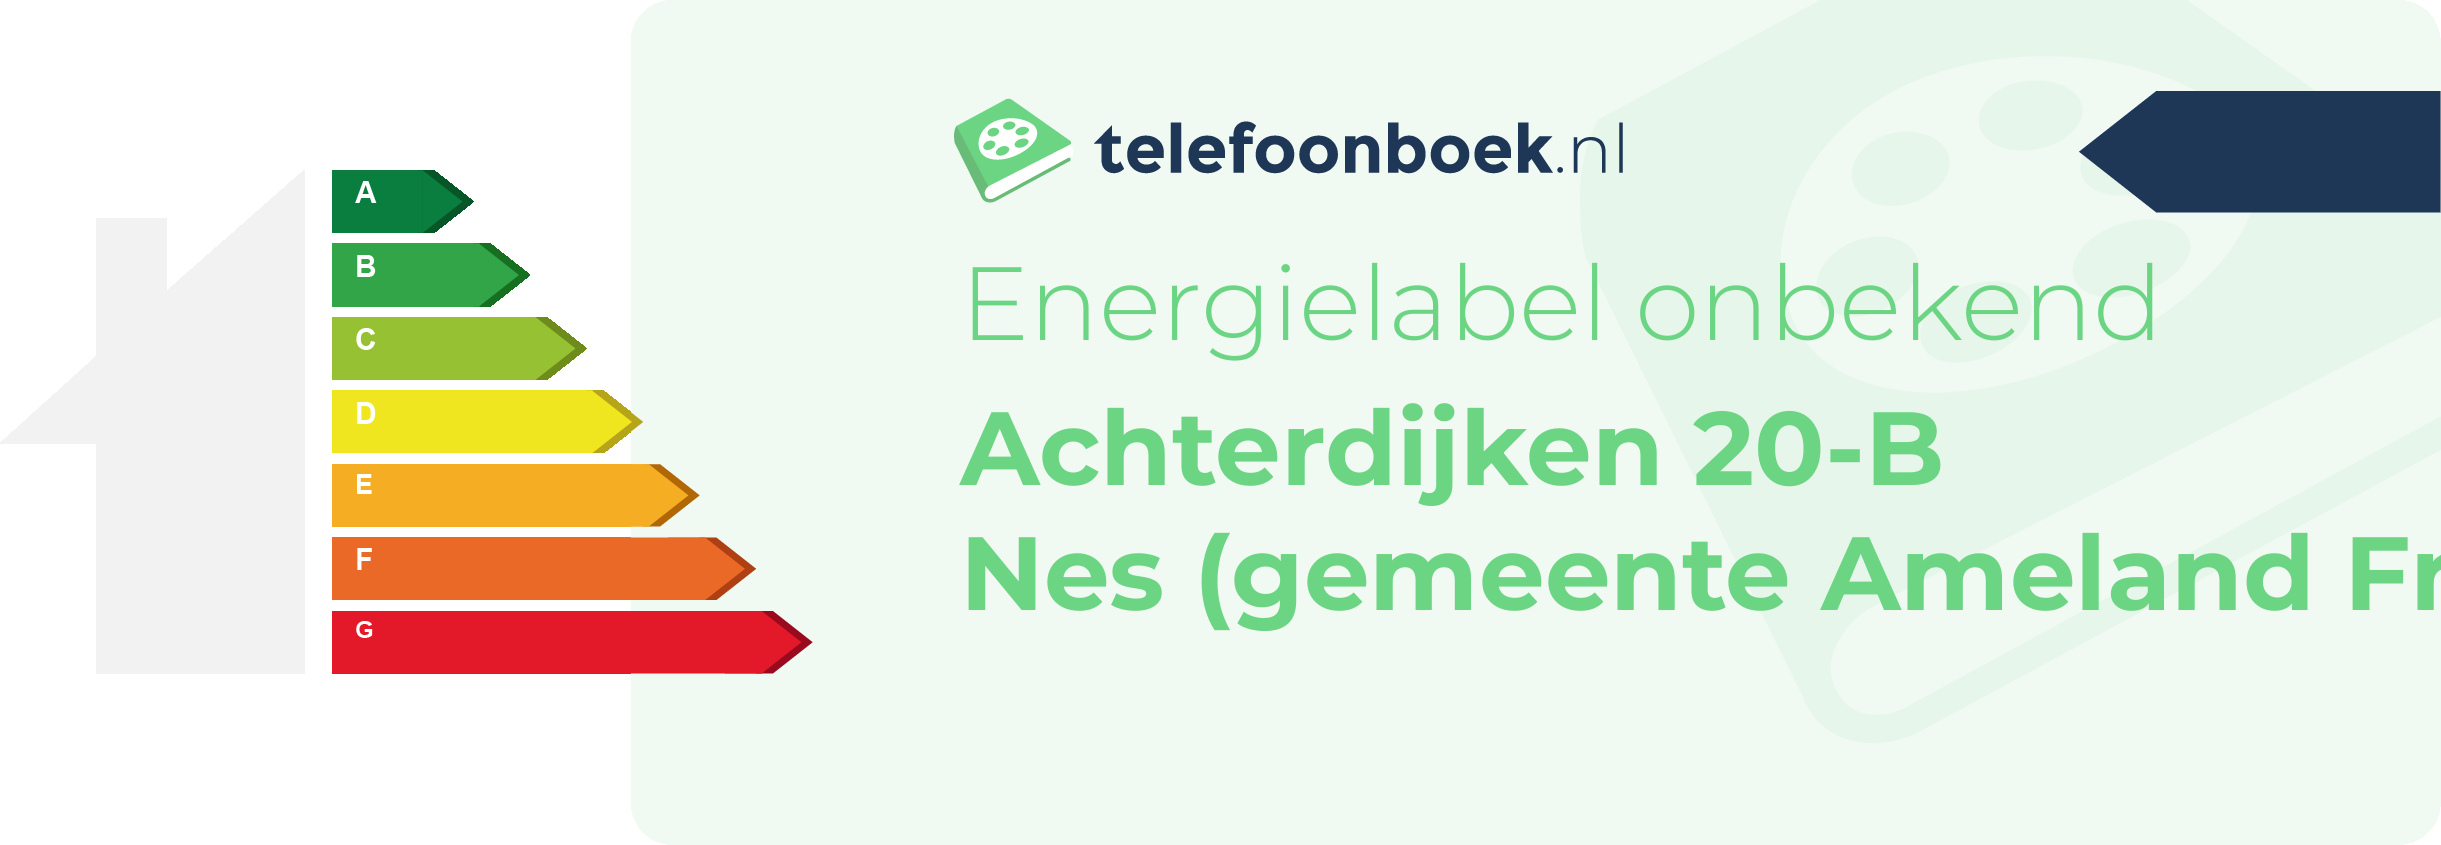 Energielabel Achterdijken 20-B Nes (gemeente Ameland Friesland)